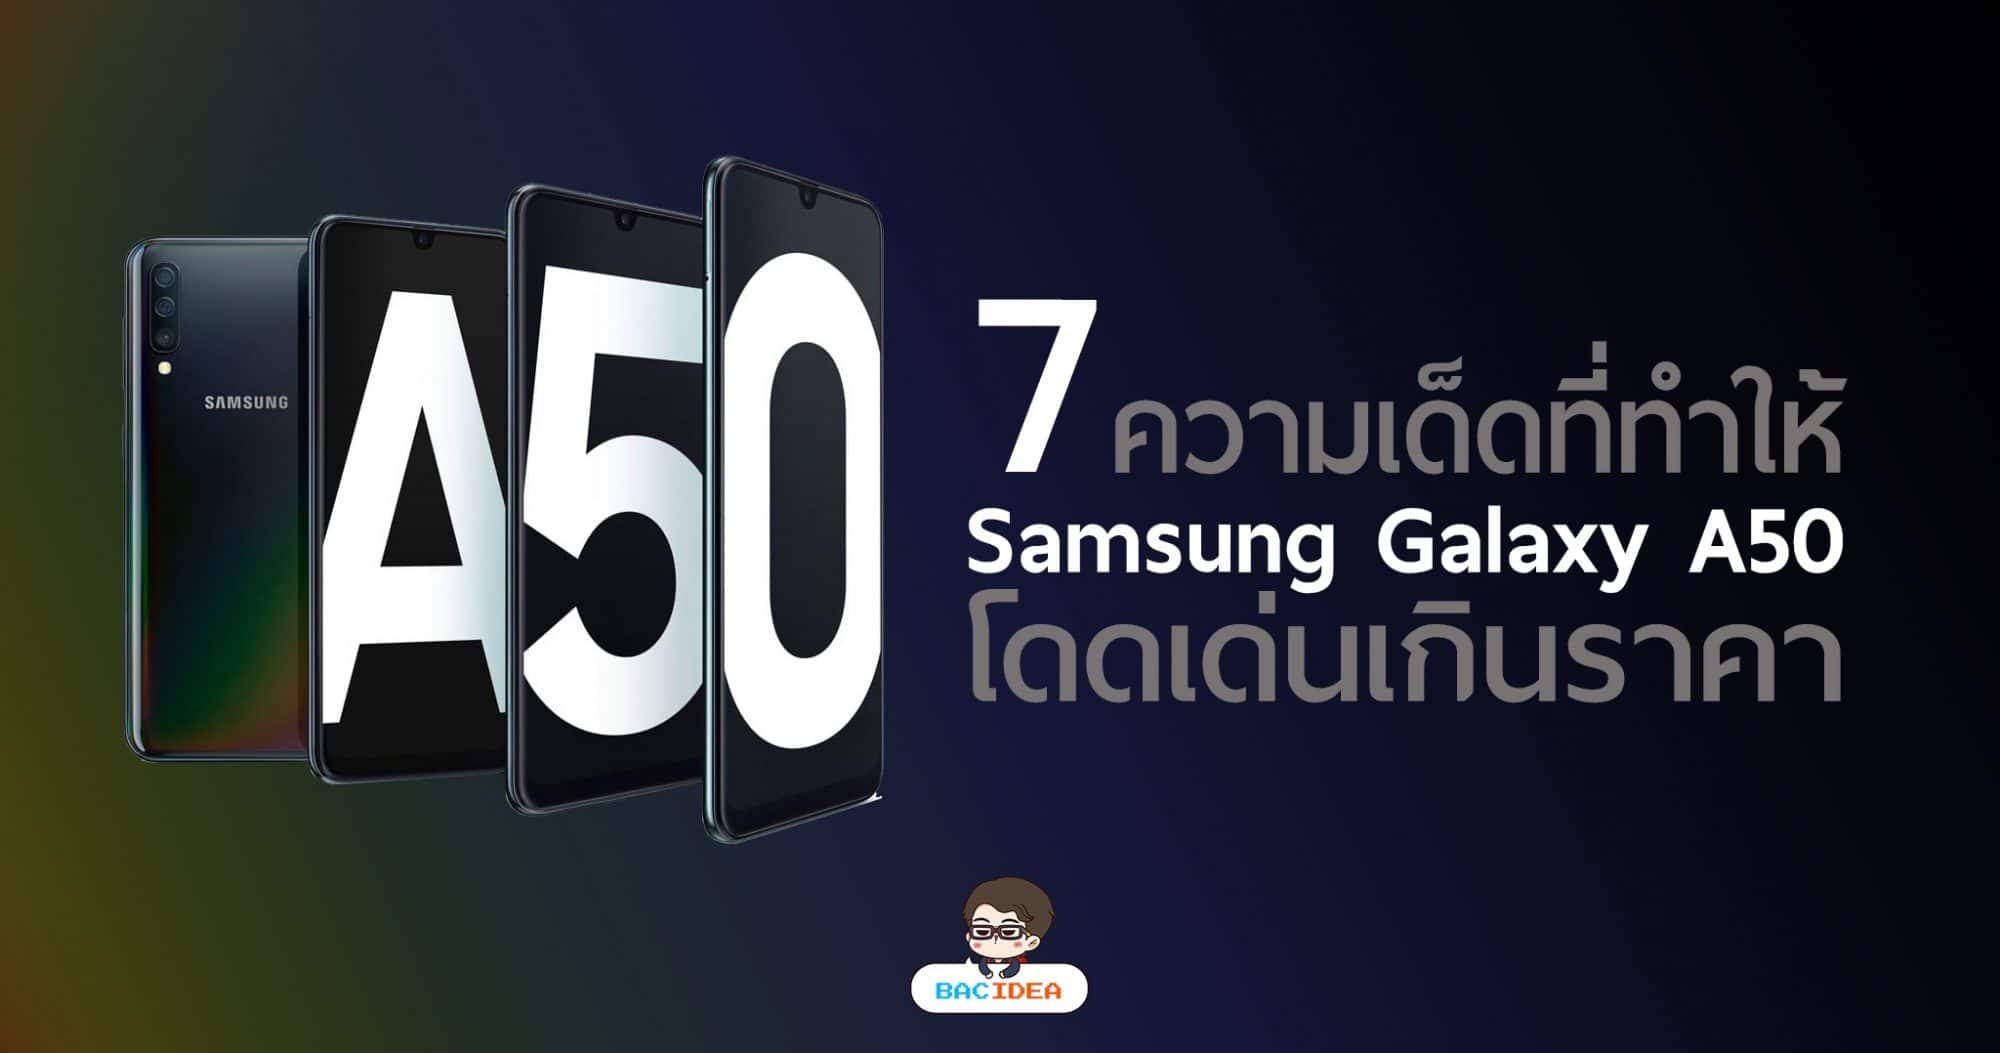 7 ความเด็ดที่ทำให้ Samsung Galaxy A50 โดดเด่นเกินราคา 1